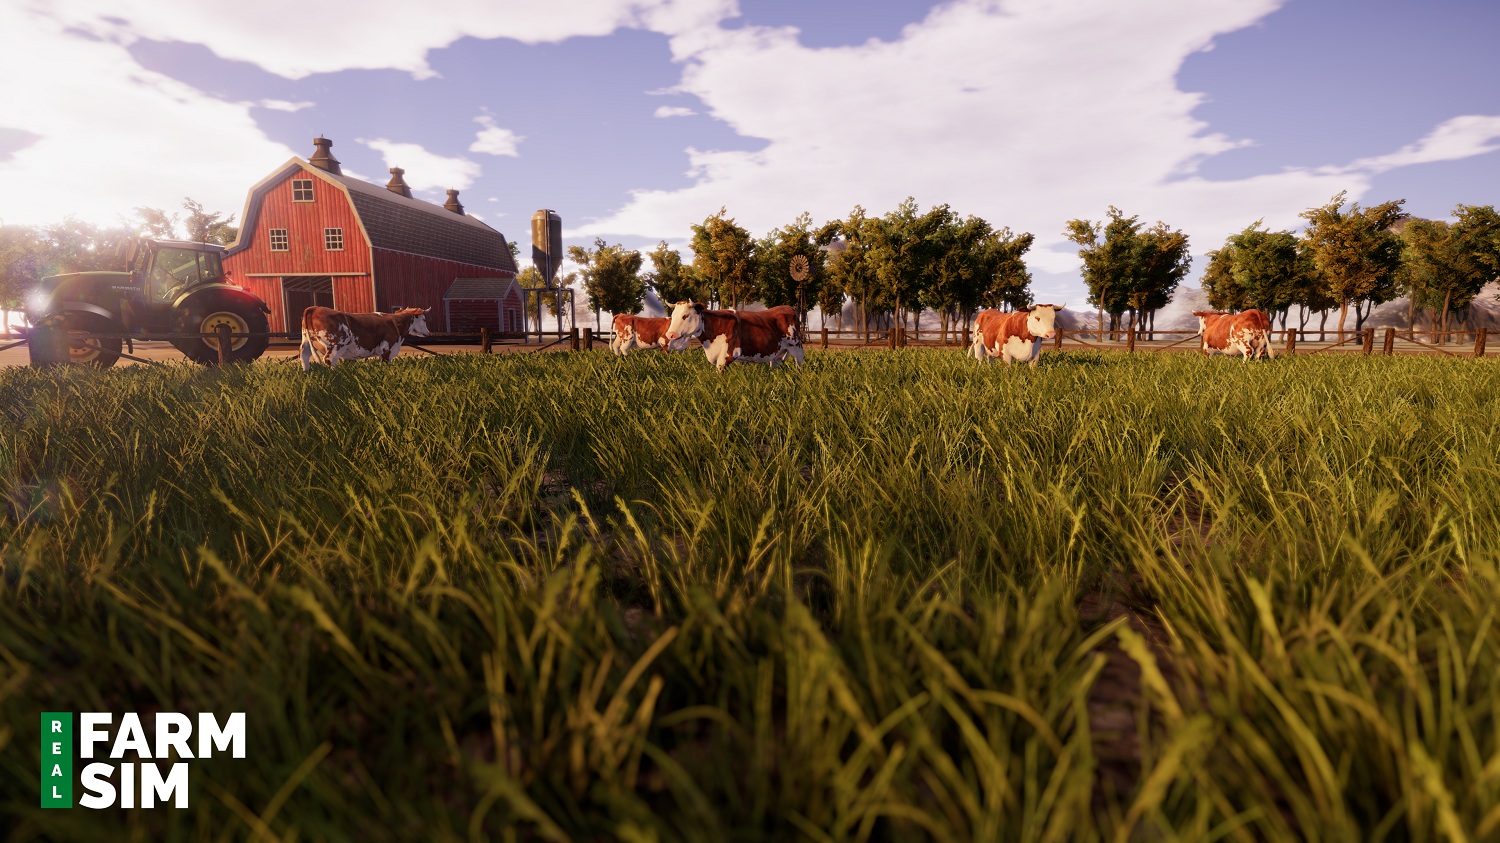 Real Farm Simulator confirma su llegada a PlayStation 4, Xbox One y PC para el próximo otoño | Primer tráiler